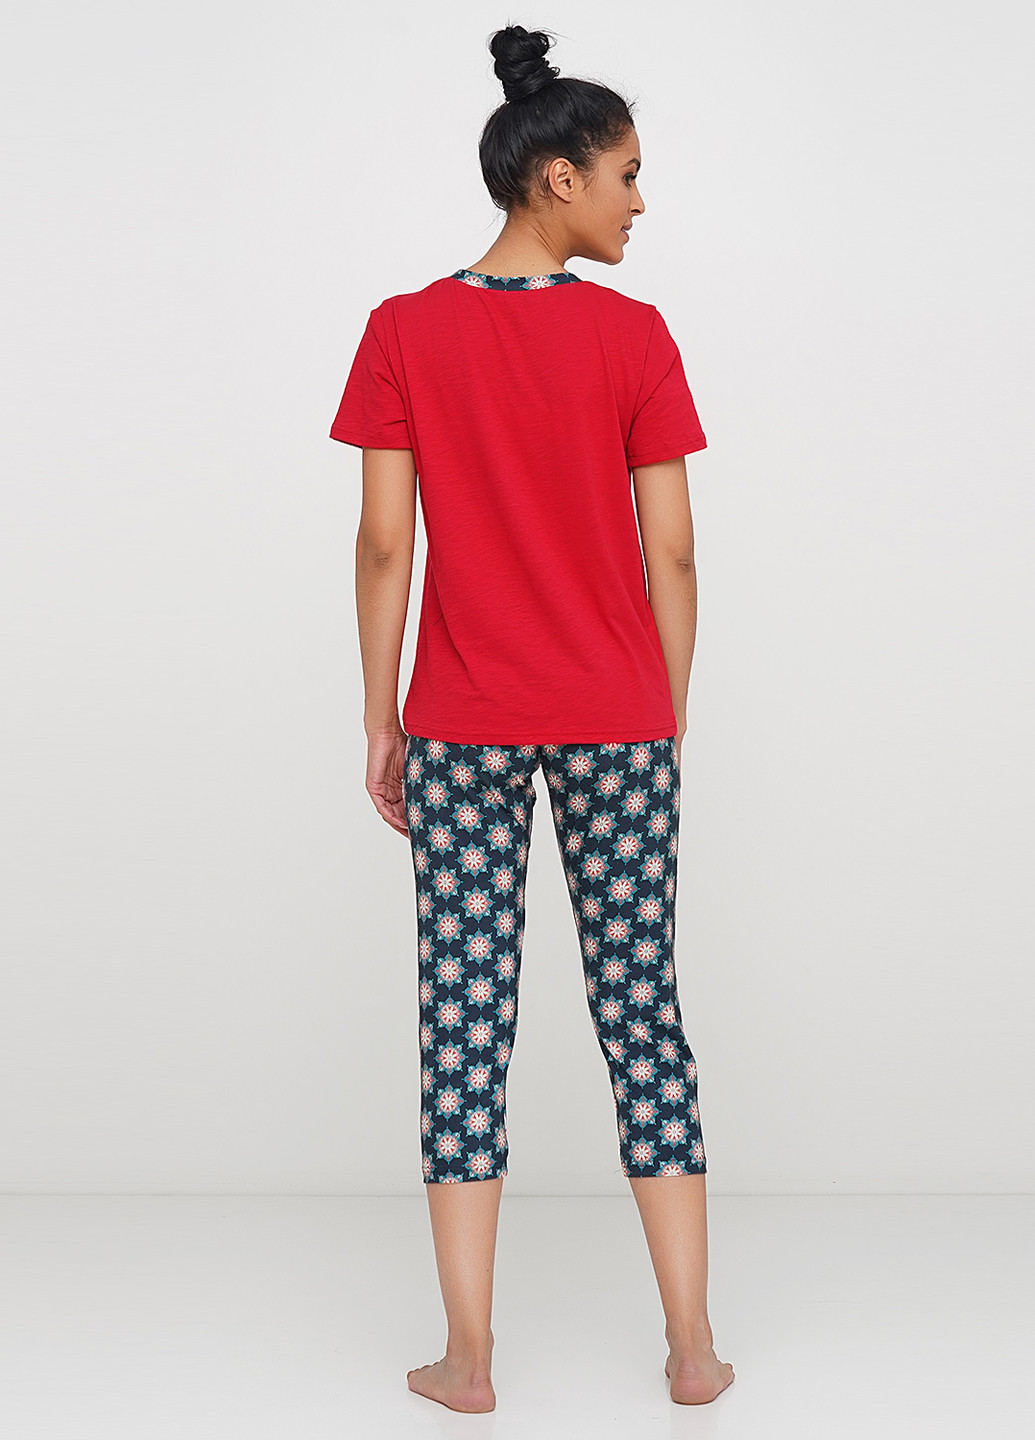 Червона всесезон піжама (футболка, бриджі) футболка+ бриджі Jhiva